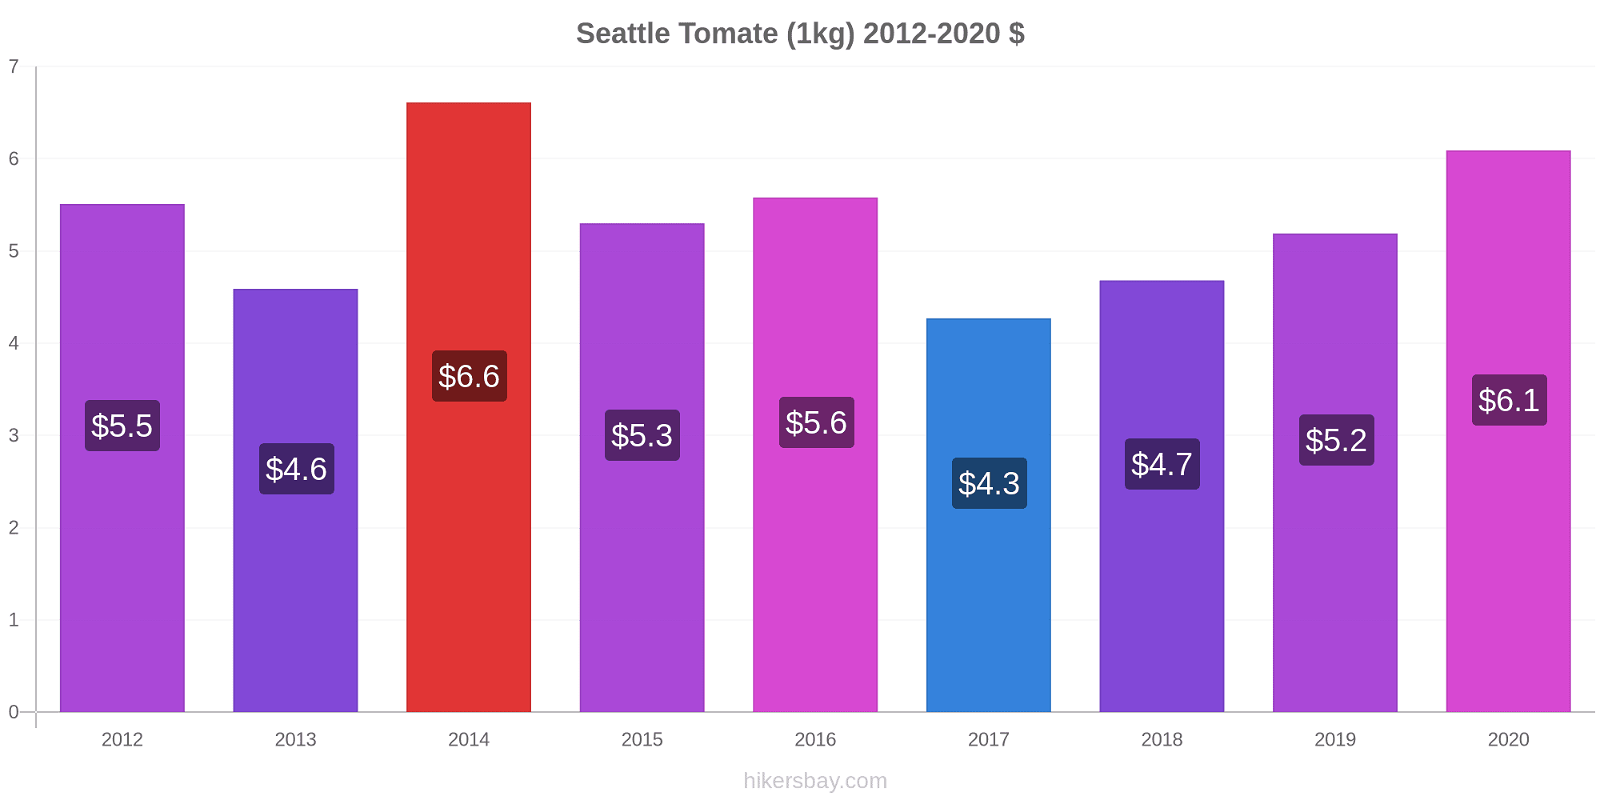 Seattle variação de preço Tomate (1kg) hikersbay.com